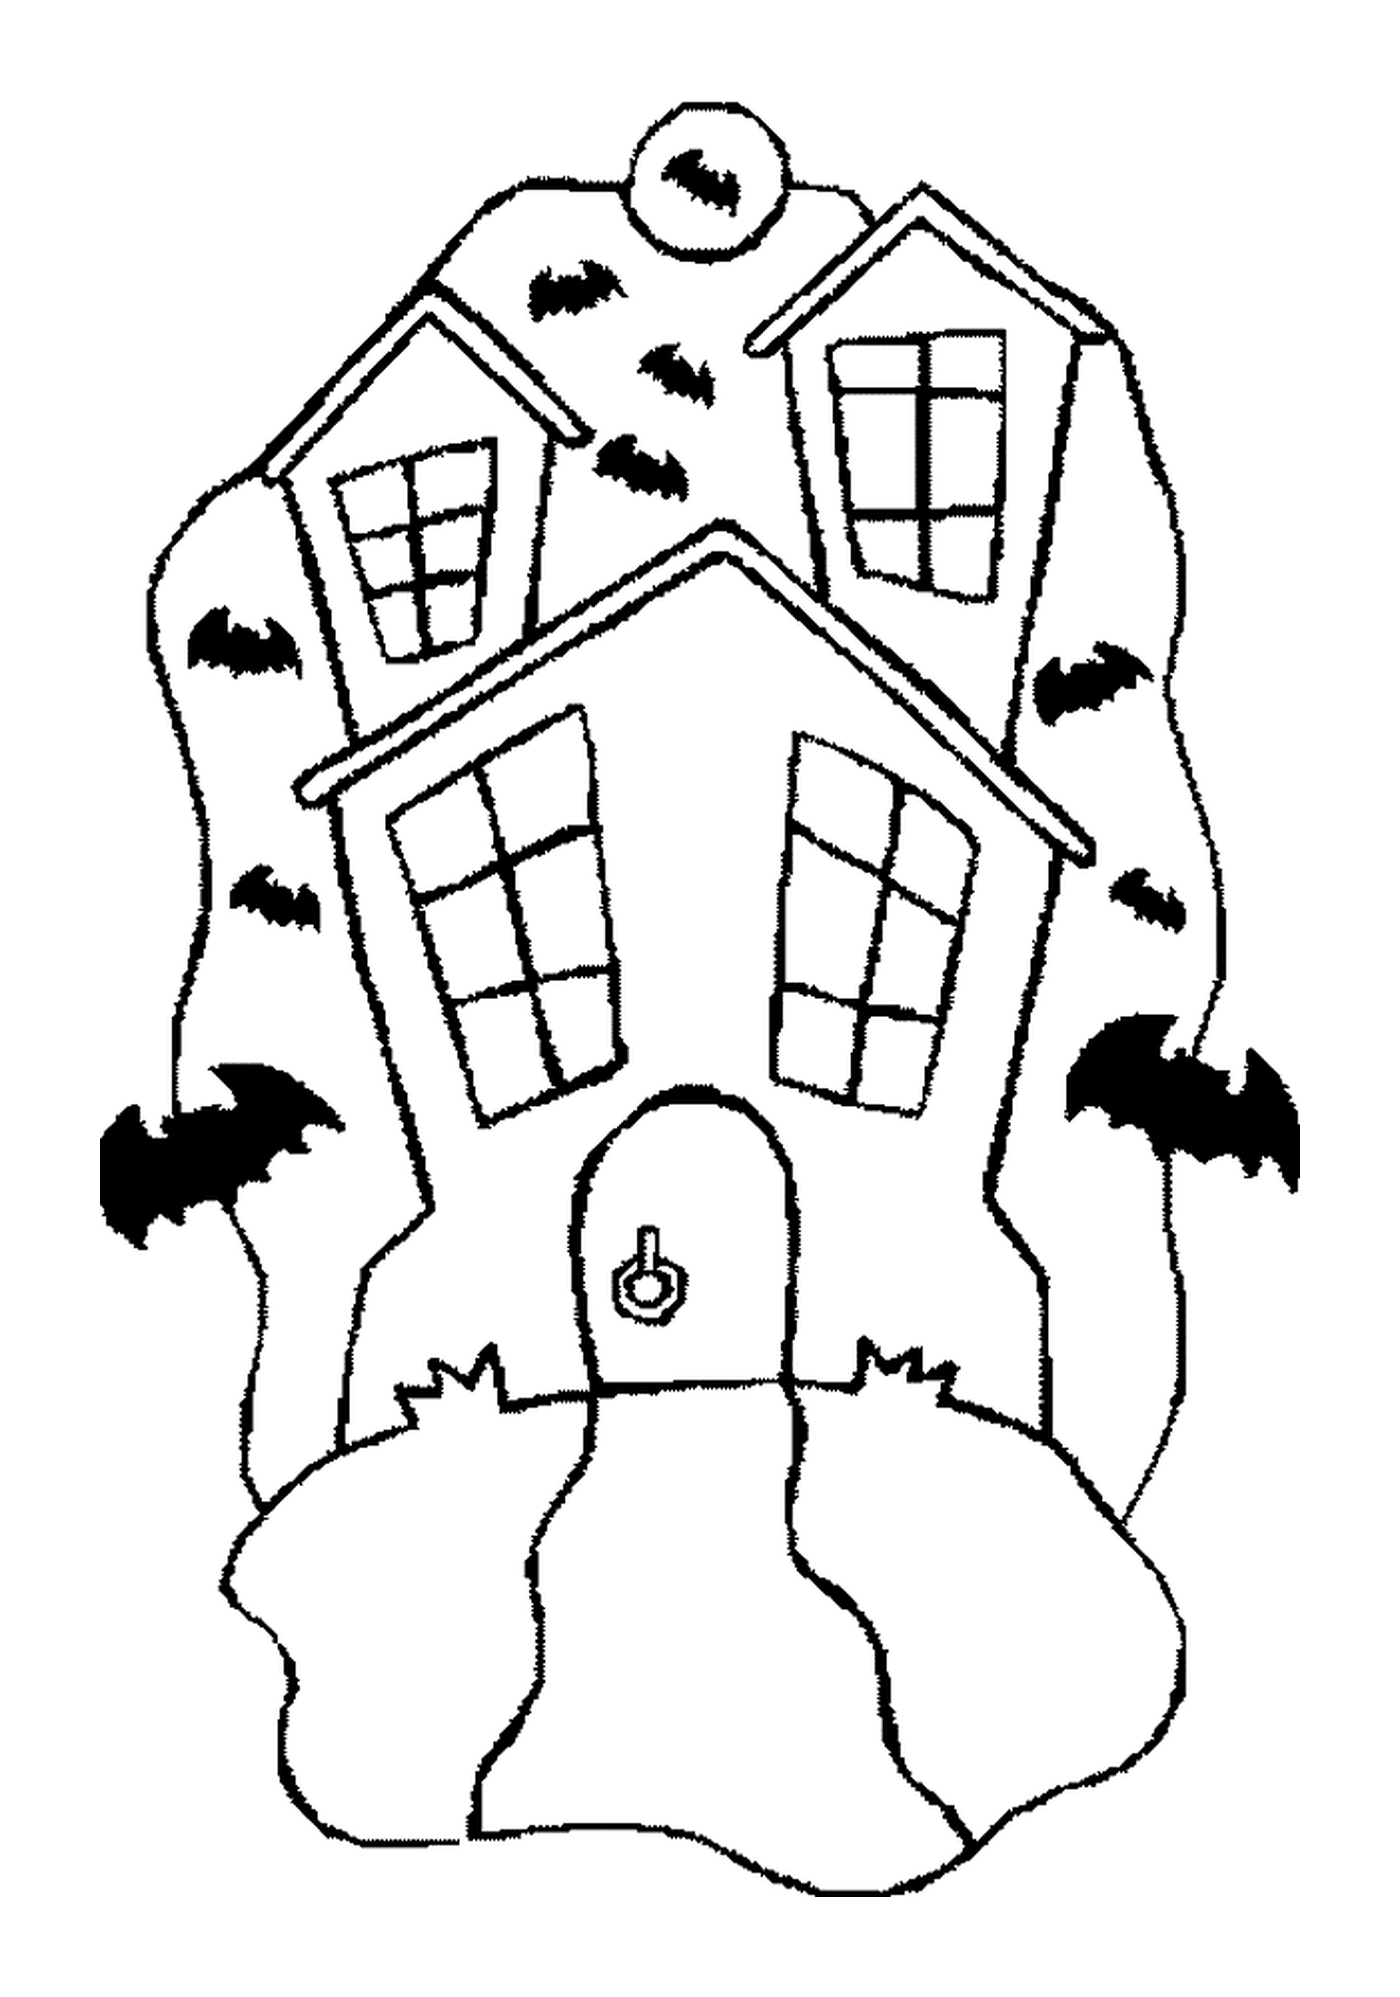   Une maison hantée avec des chauves-souris 